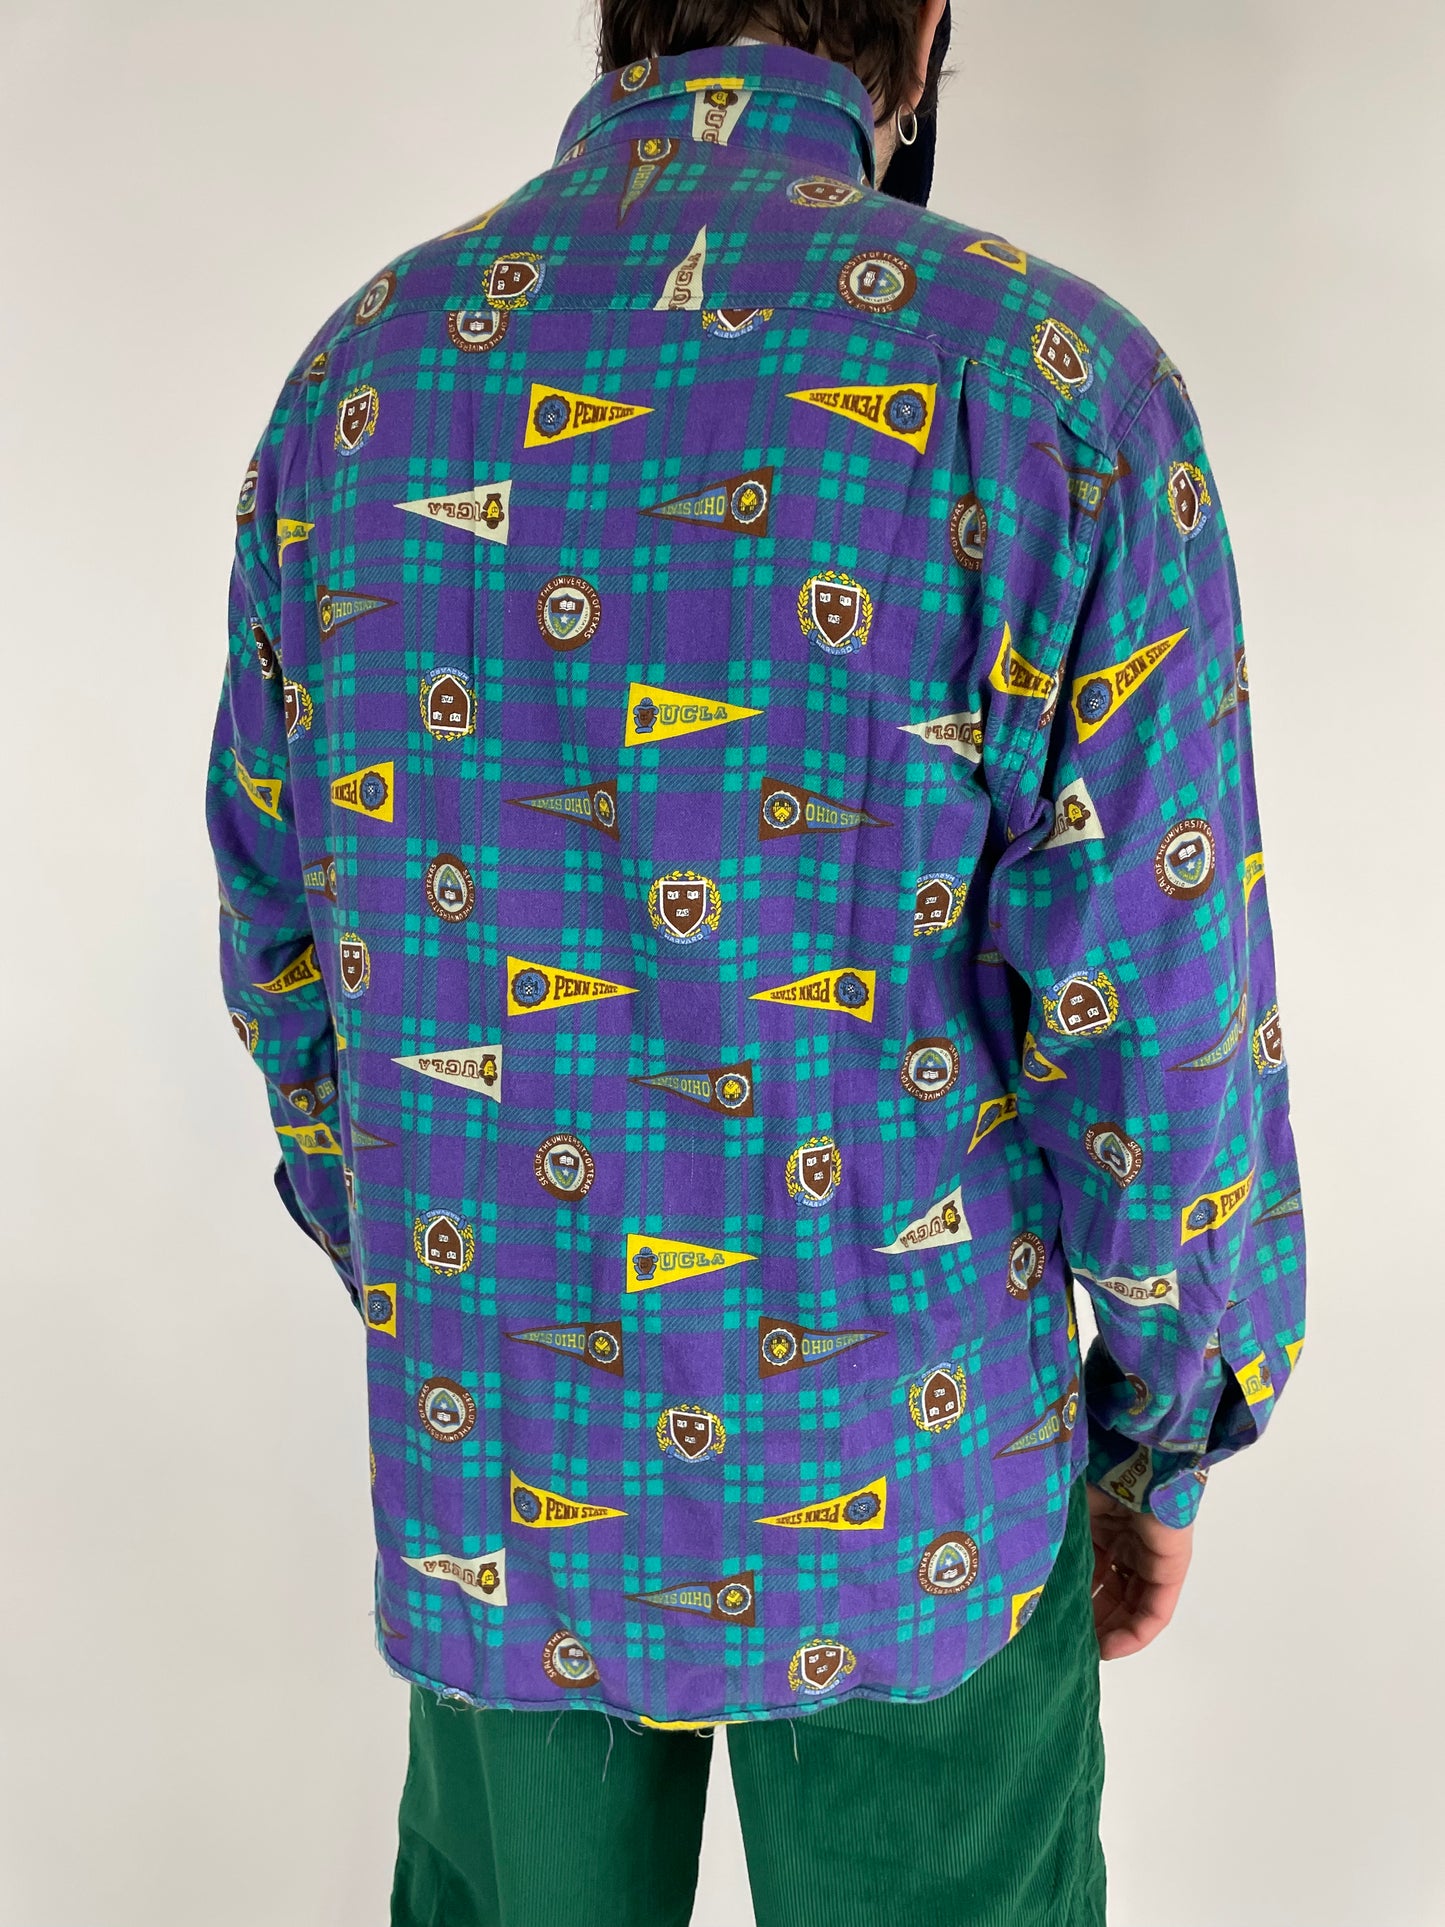 Equivoco-Shirt aus den 1990ern